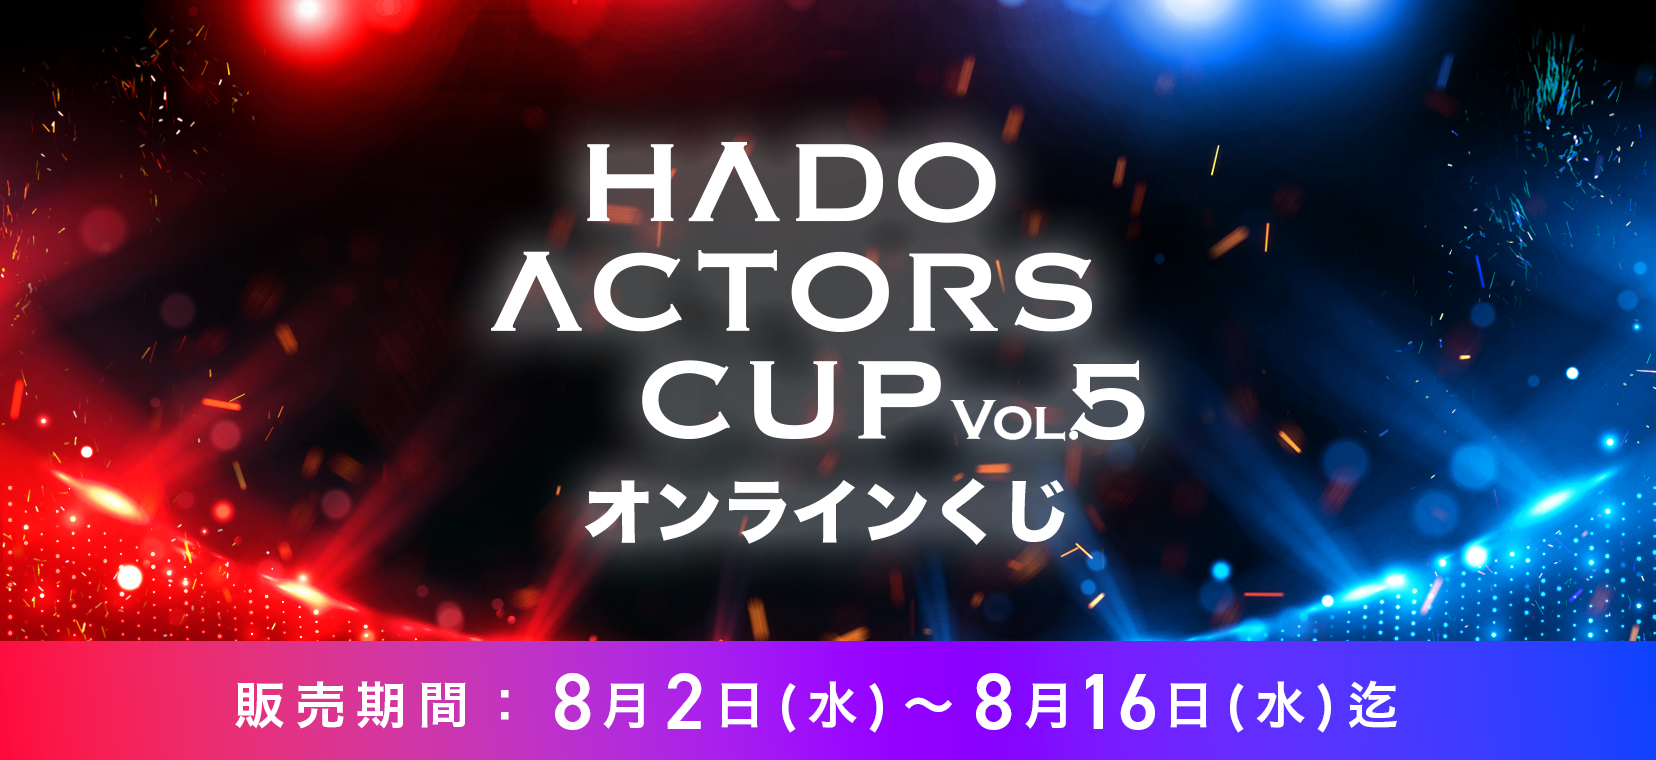 即購入可☆HADO acters cup vol.4 オンラインくじ 上田堪大